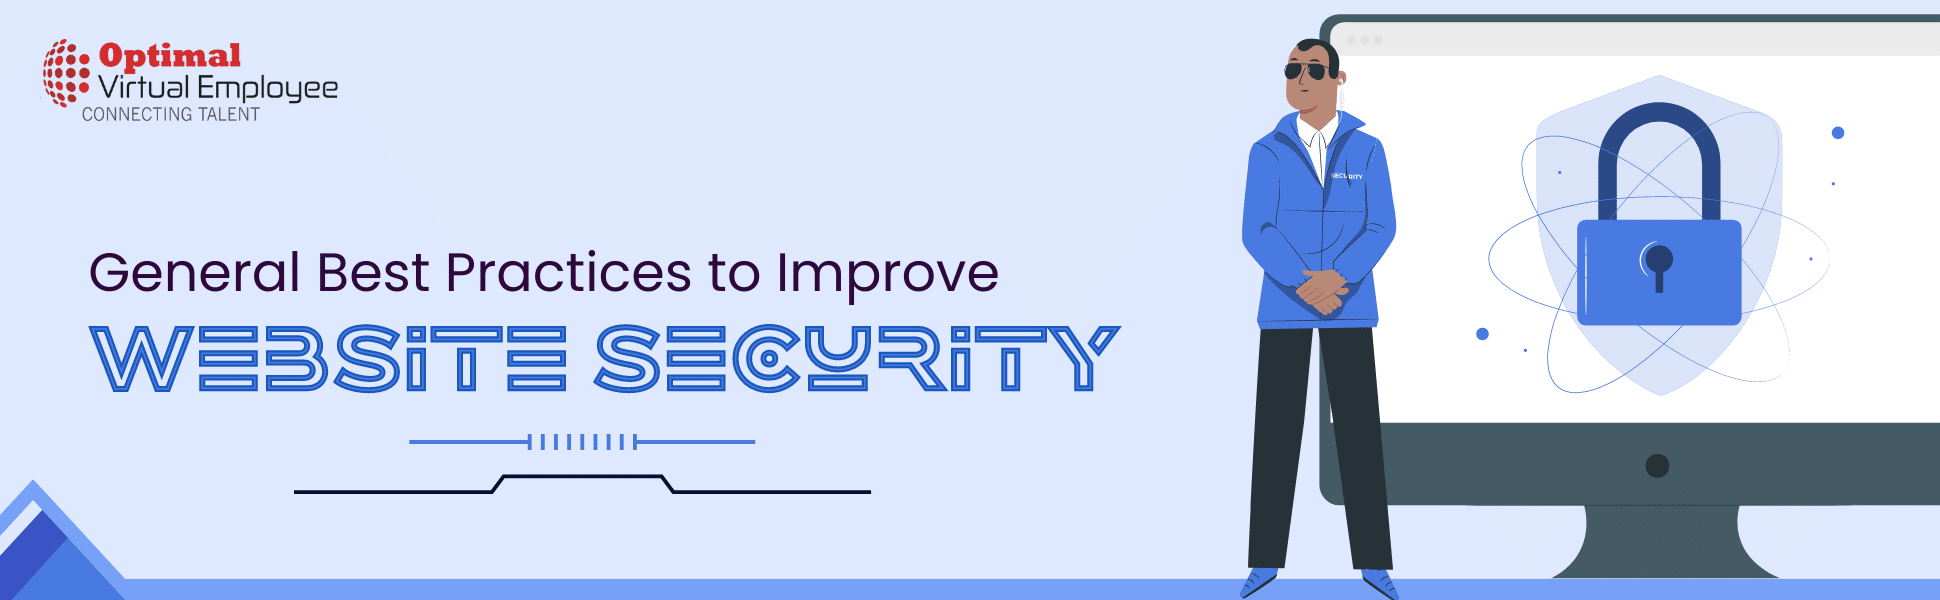 General Best Practices to Improve Website Security